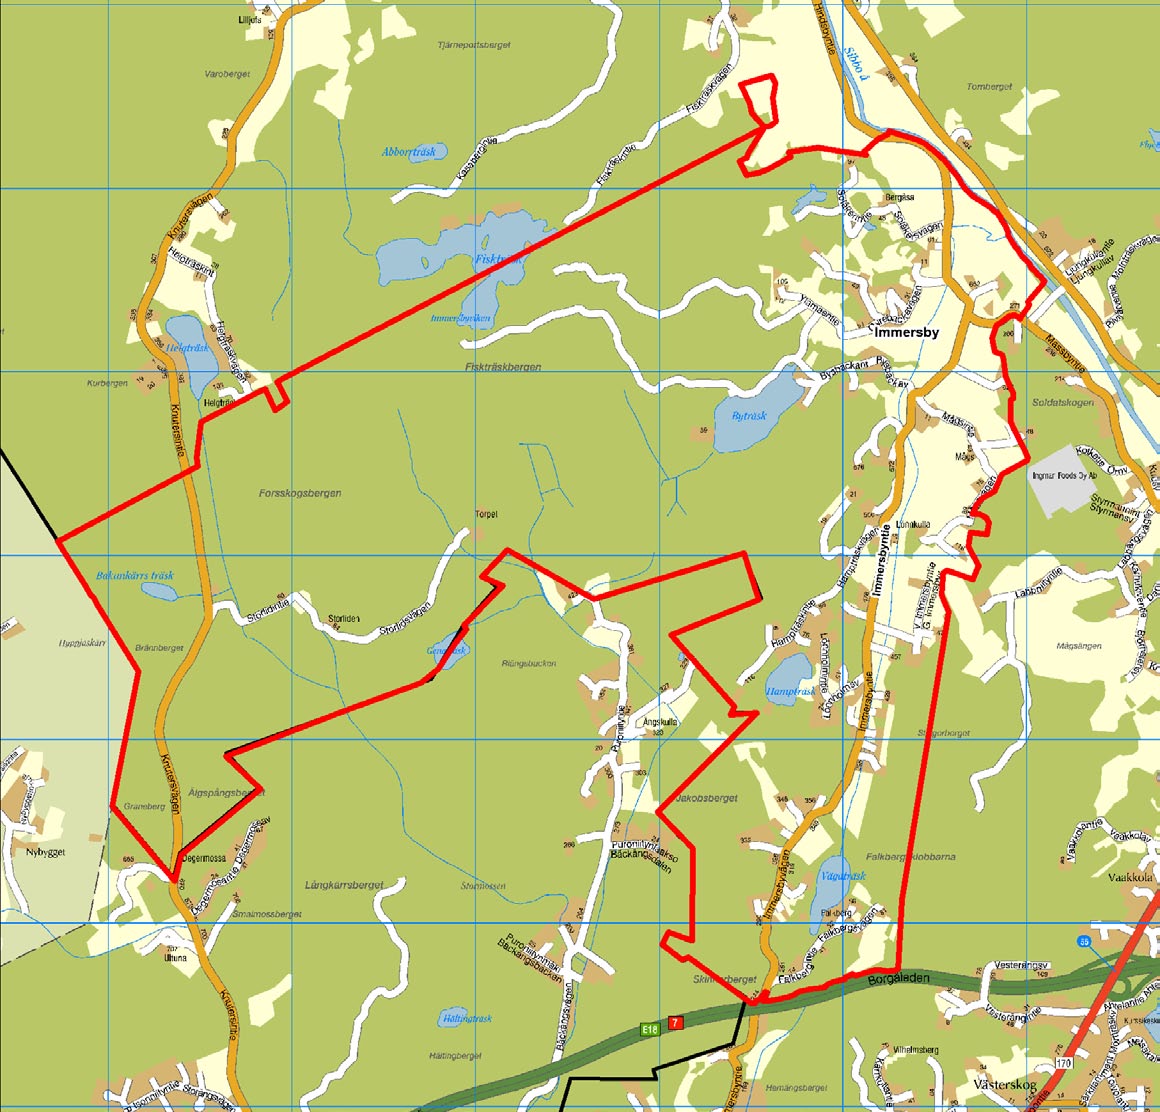 Planområdet, Immersby bytätort och delar av Hindsby och Östersundom ligger i sydvästra Sibbo norr om Borgåleden (E18) cirka 7 kilometer söder om Nickby centrum.